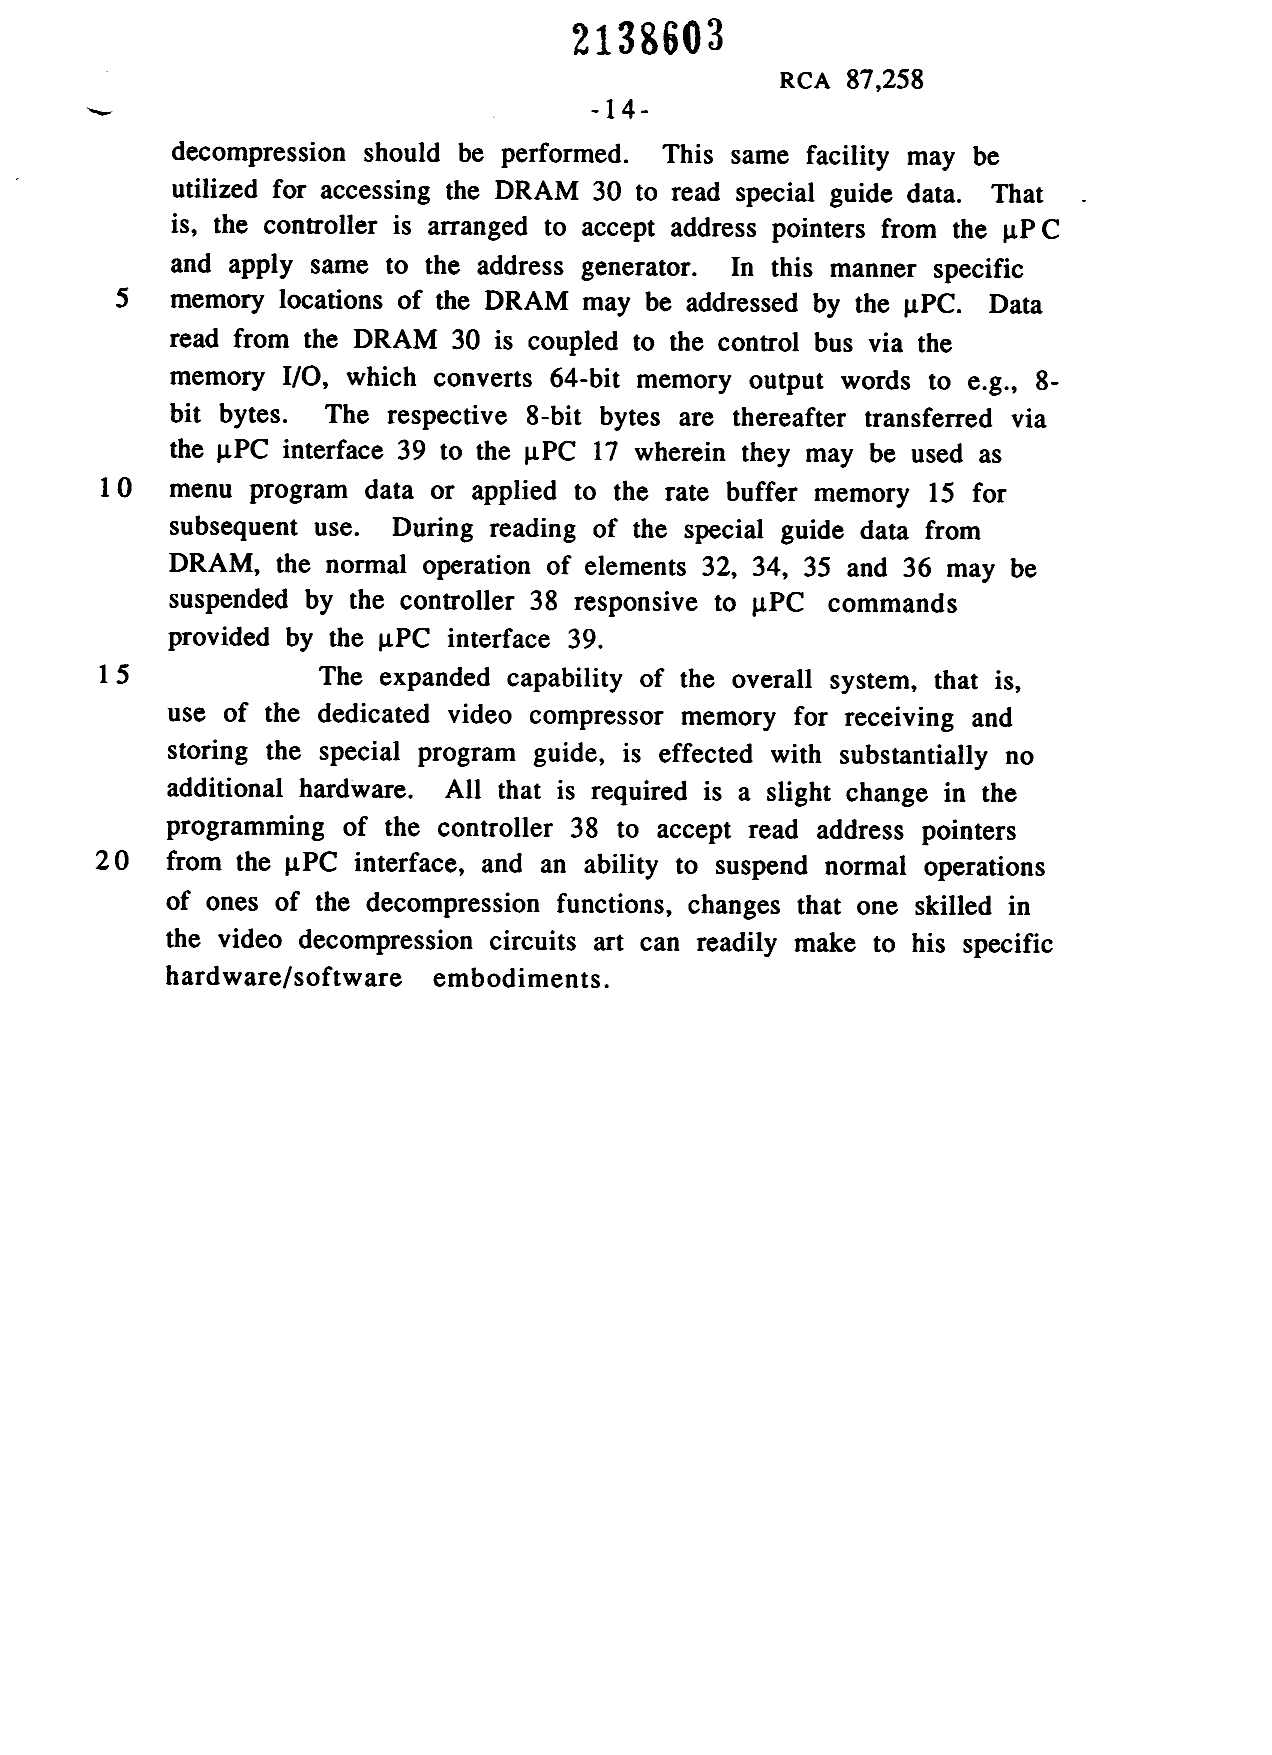 Canadian Patent Document 2138603. Description 19950706. Image 14 of 14